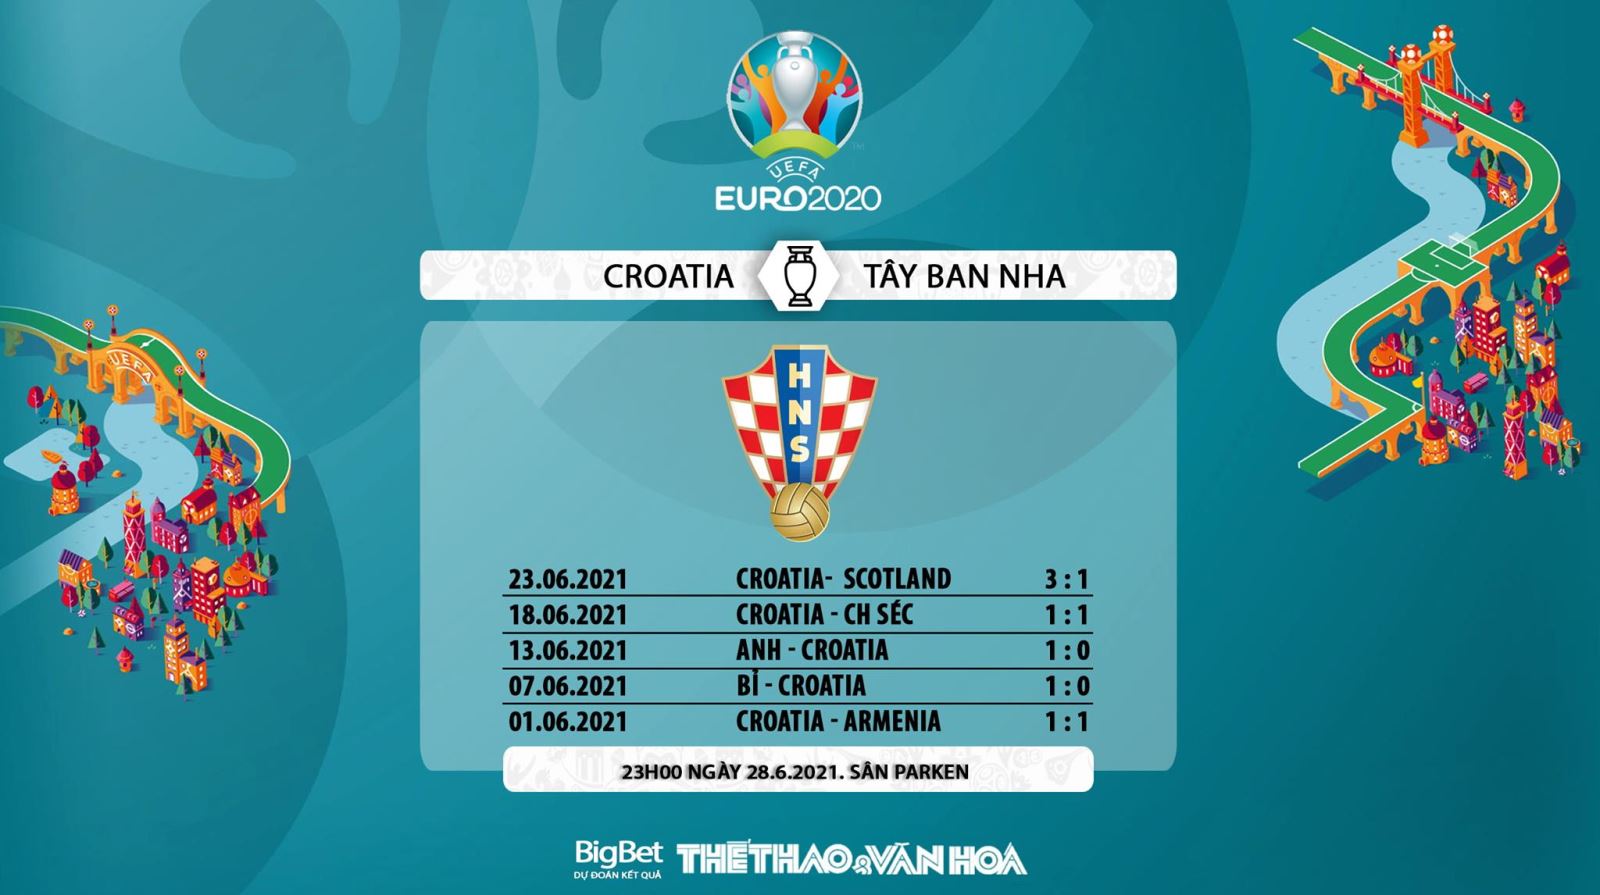 keo nha cai, keo bong da, nhận định kết quả, nhận định bóng đá Croatia vs Tây Ban Nha, kèo bóng đá Croatia vs Tây Ban Nha, VTV6, VTV3, trực tiếp bóng đá hôm nay, ty le keo, nhận định bóng đá, EURO 2021